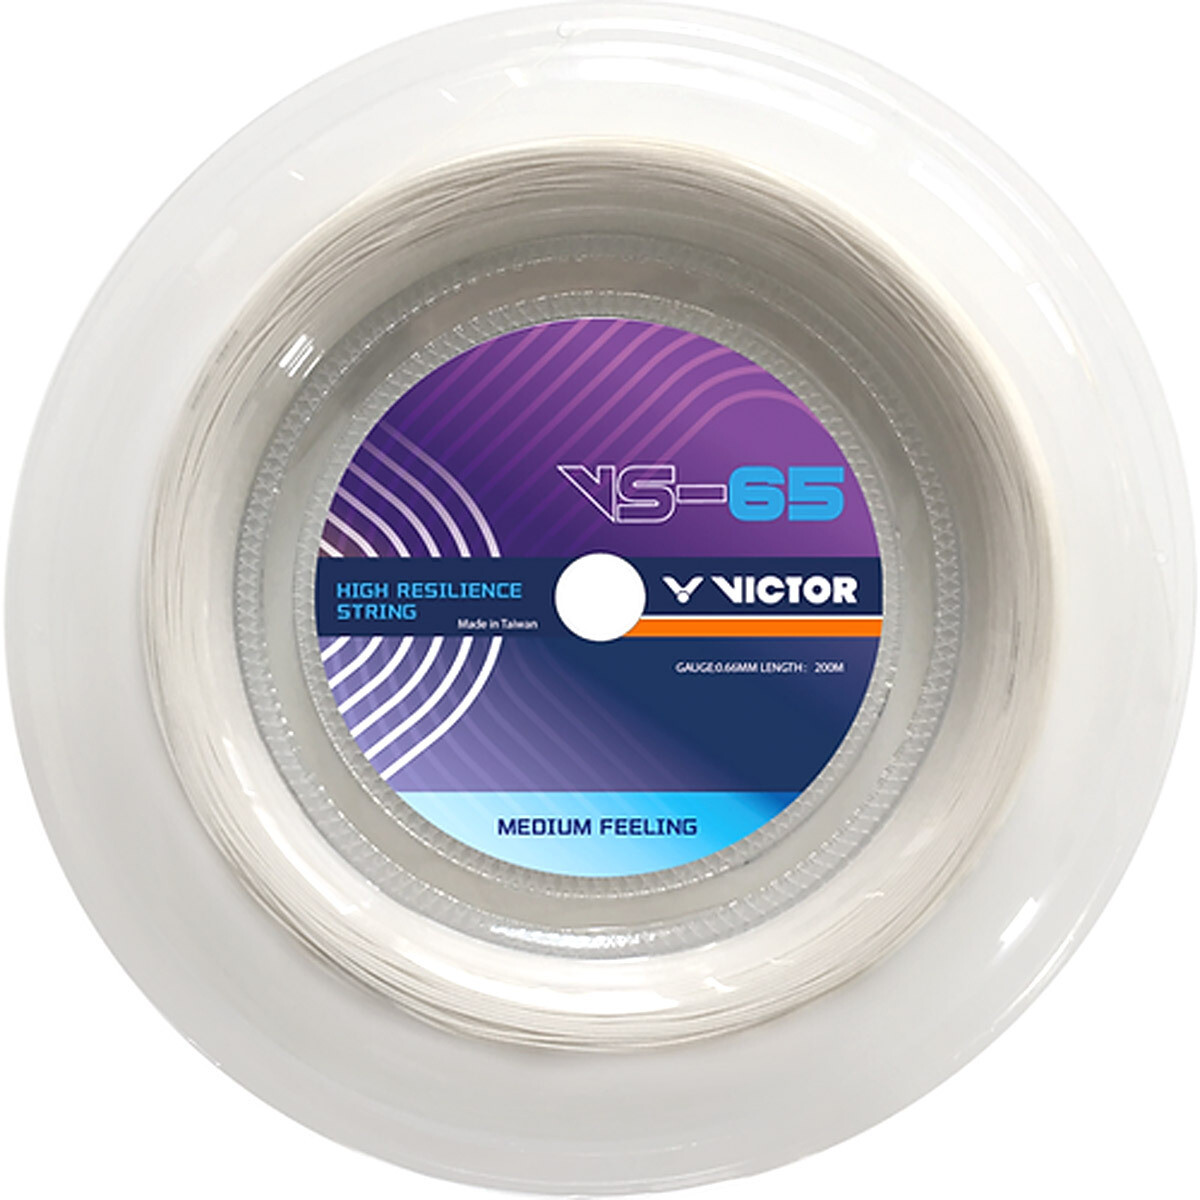 Victor VS 65 Badminton String - 200m Reel - White